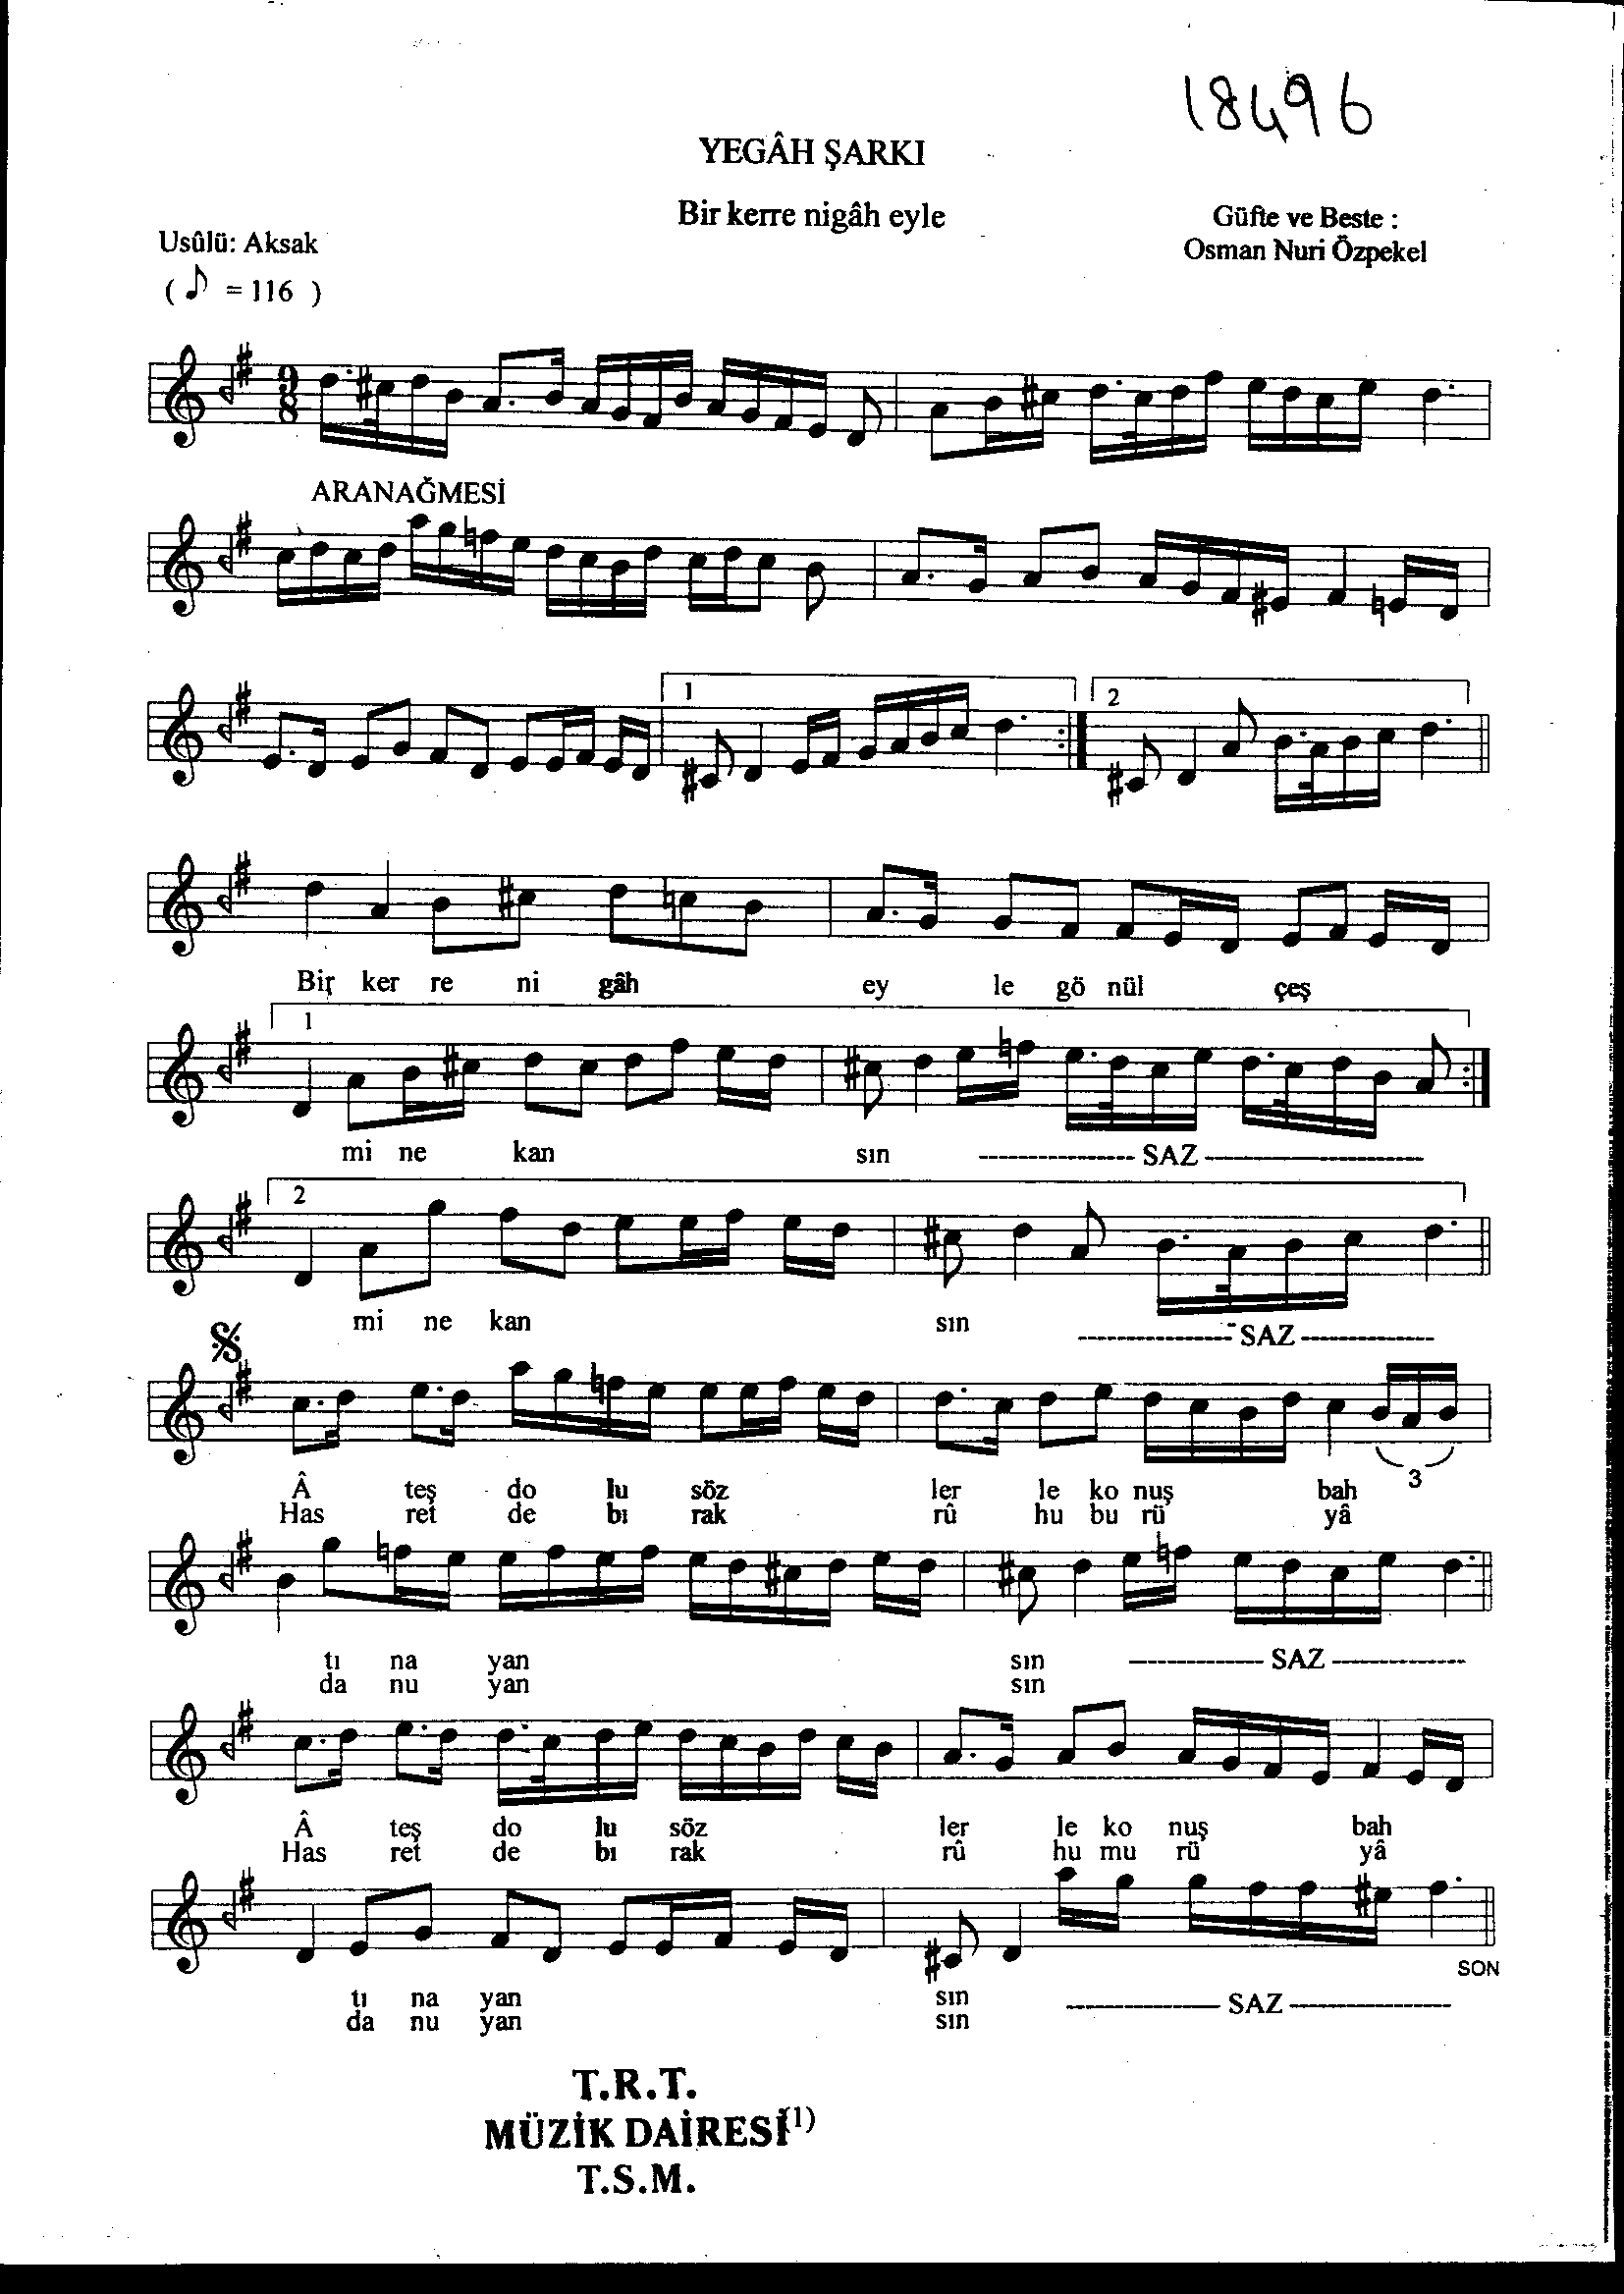 Yegah - Şarkı - Osman Nûri Özpekel - Sayfa 1